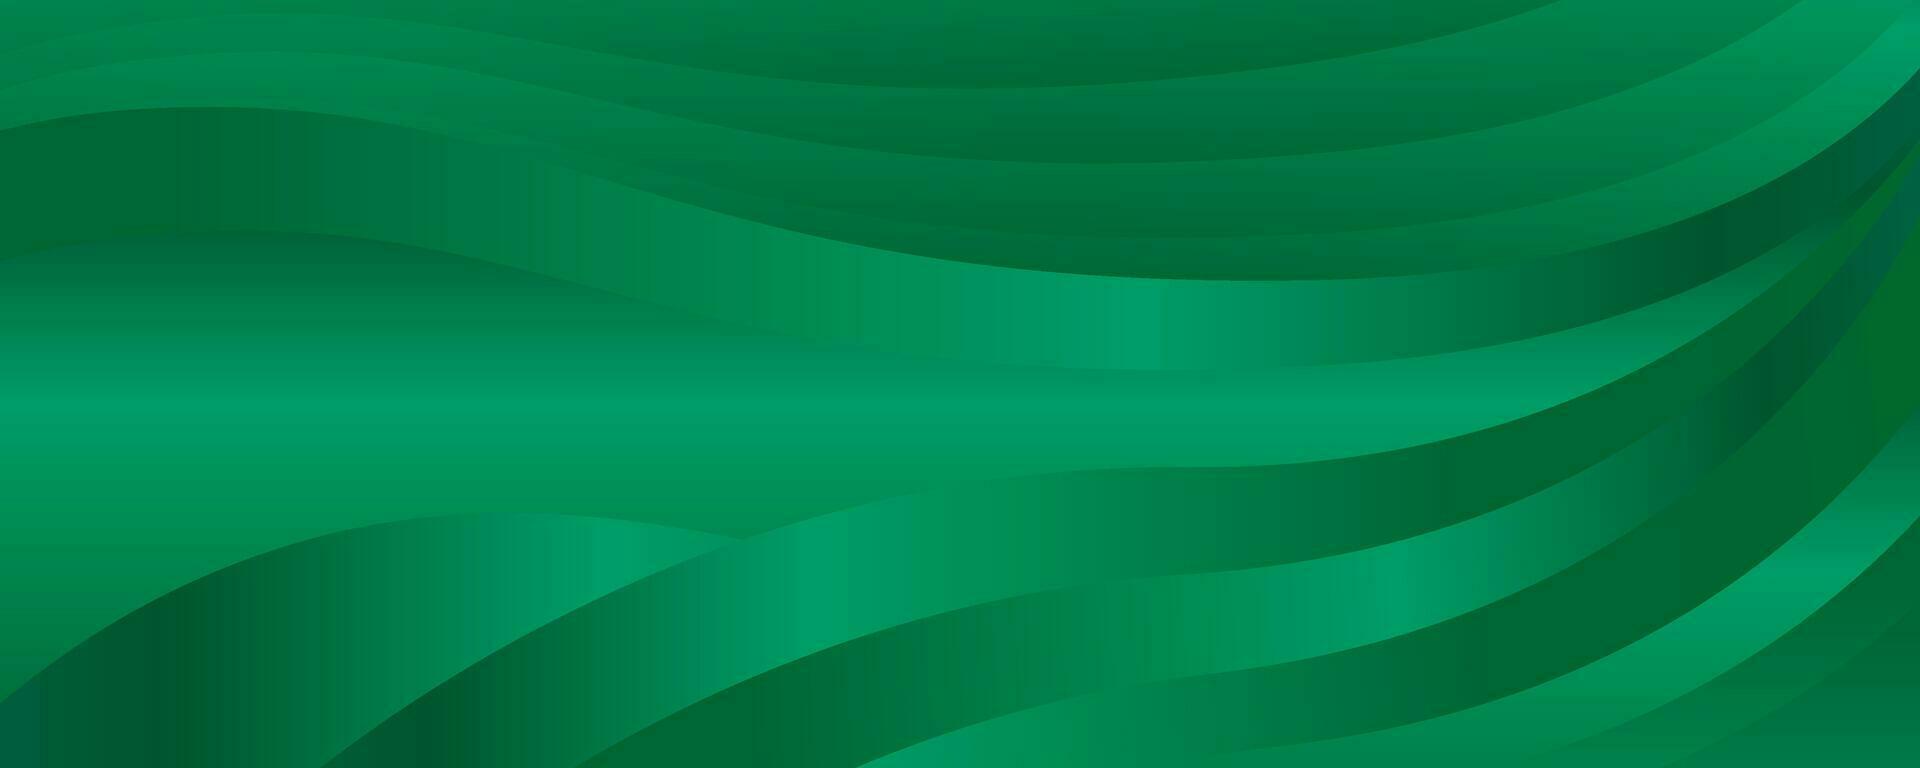 grön abstrakt bakgrund med böjd rader. vektor illustration för din design.